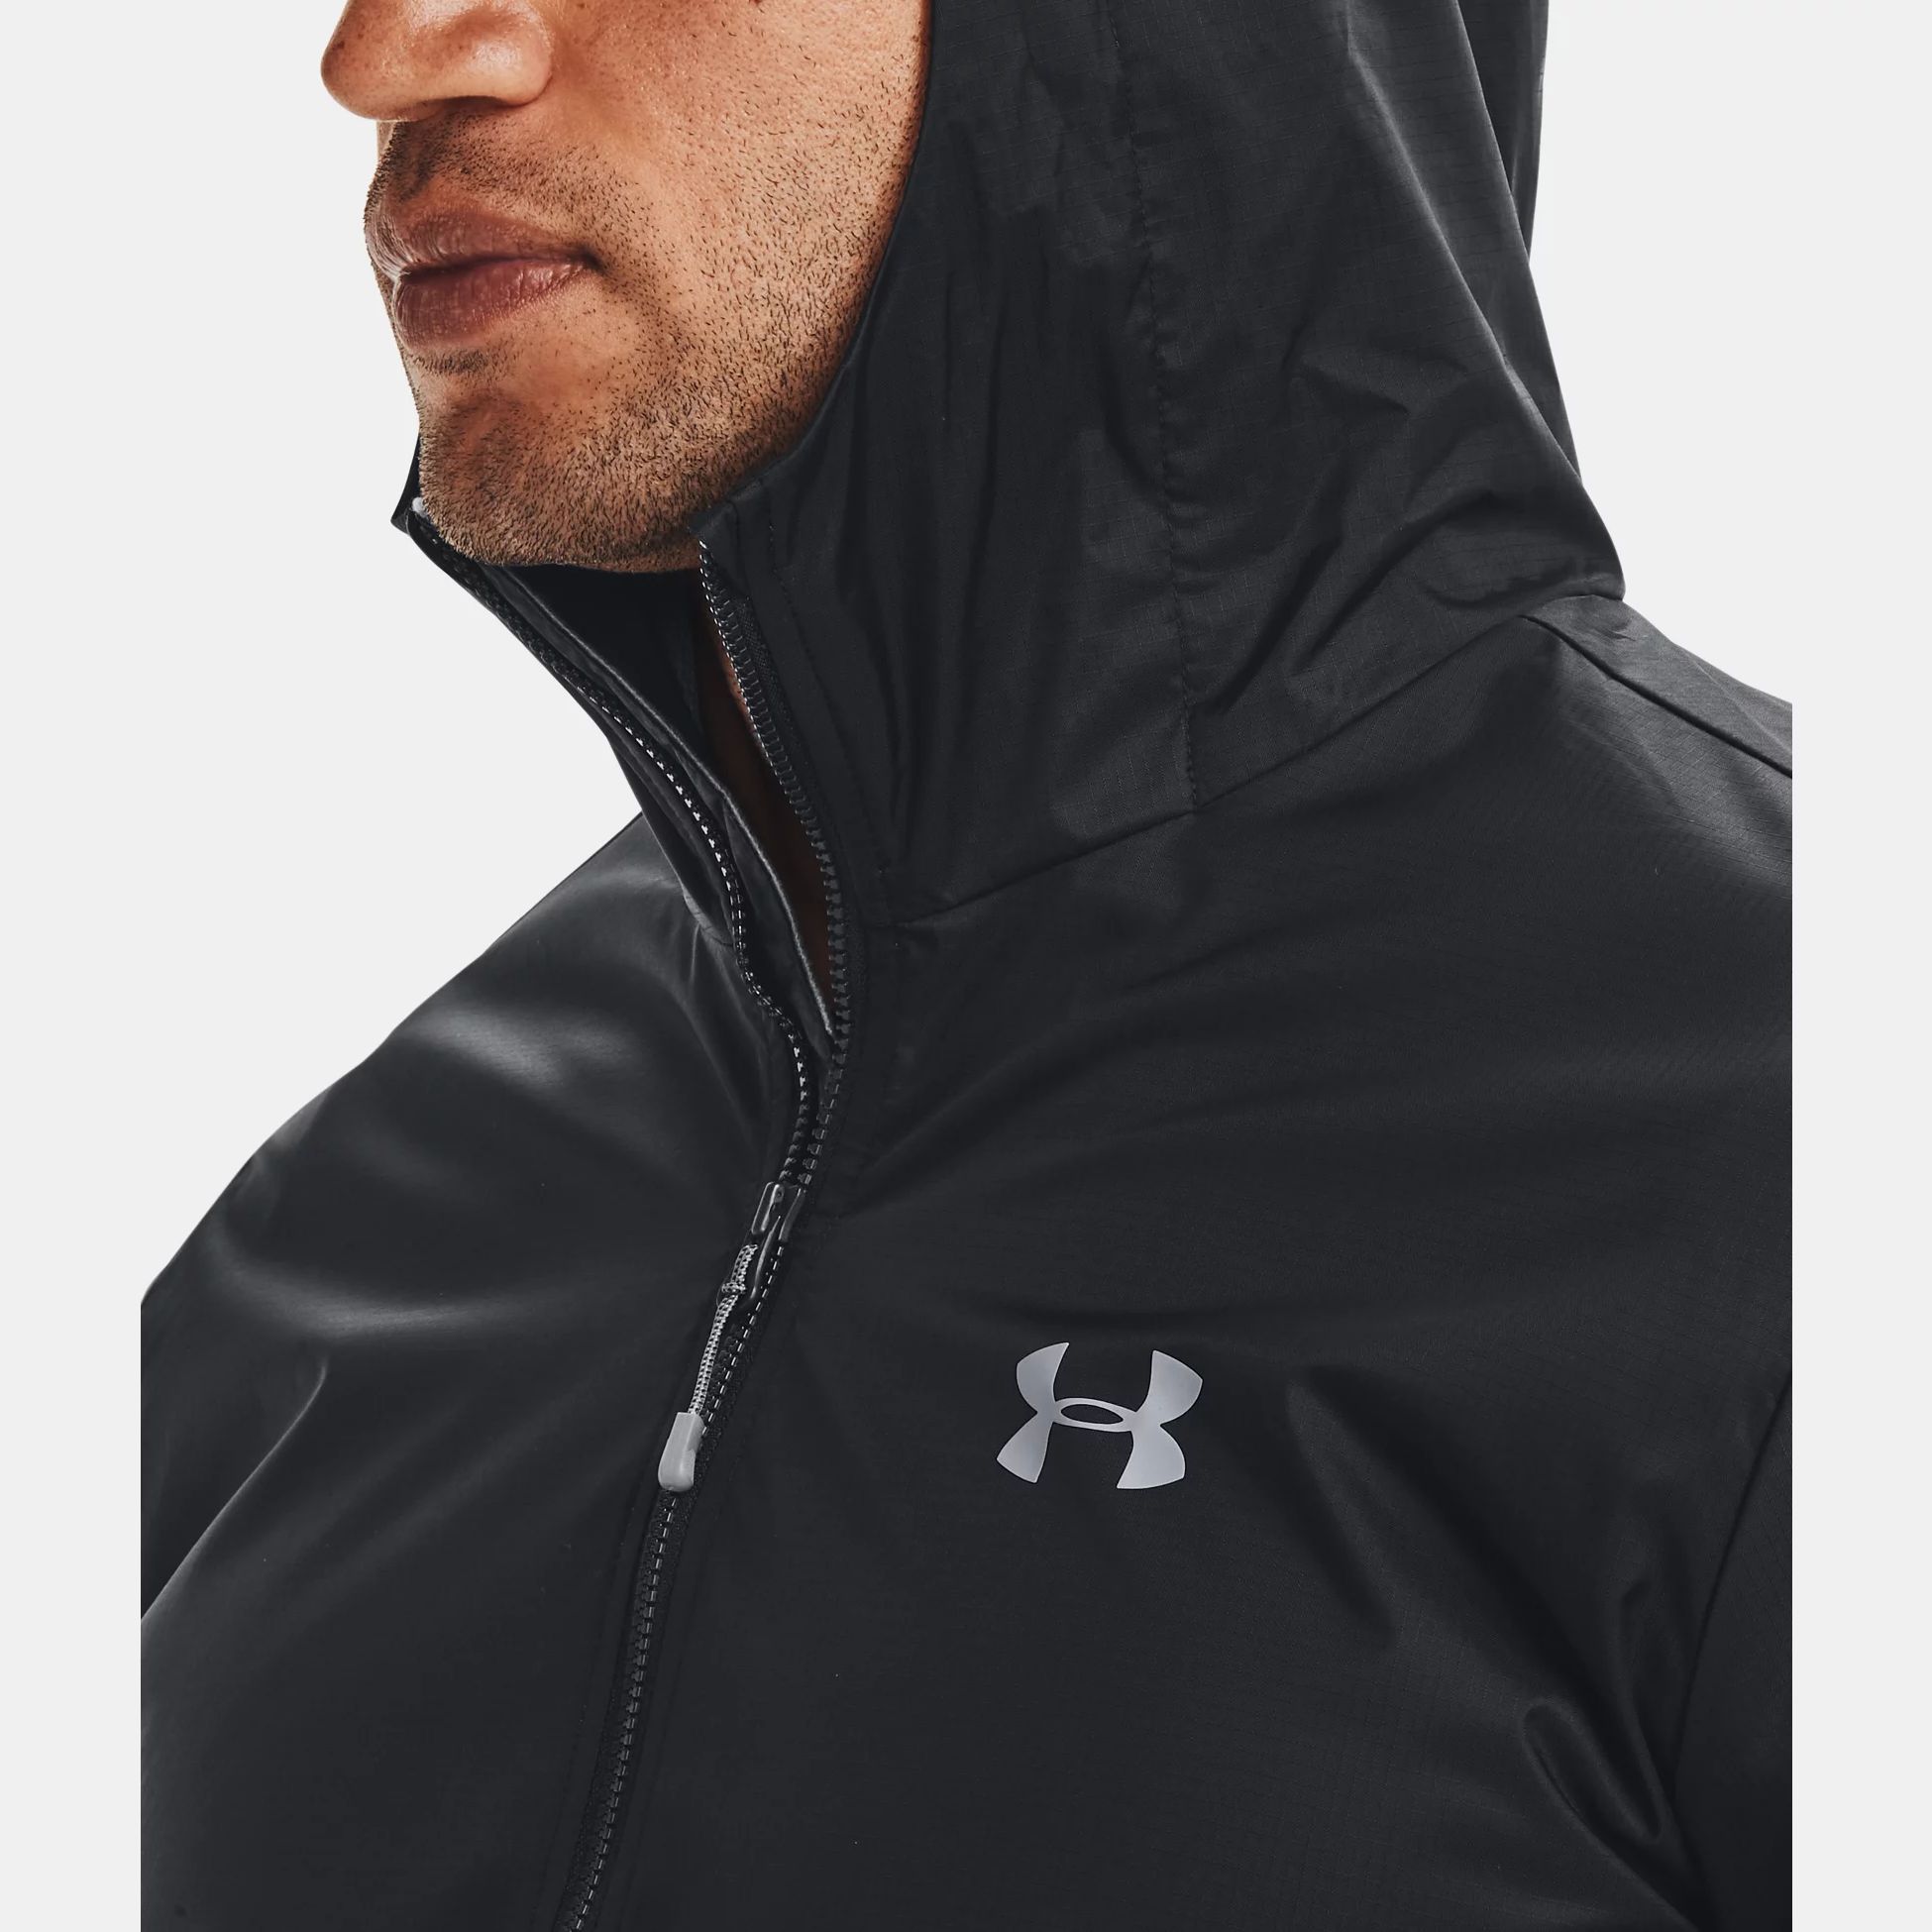 Jackets & | Clothing | UA Forefront Rain Jacket | Fitness